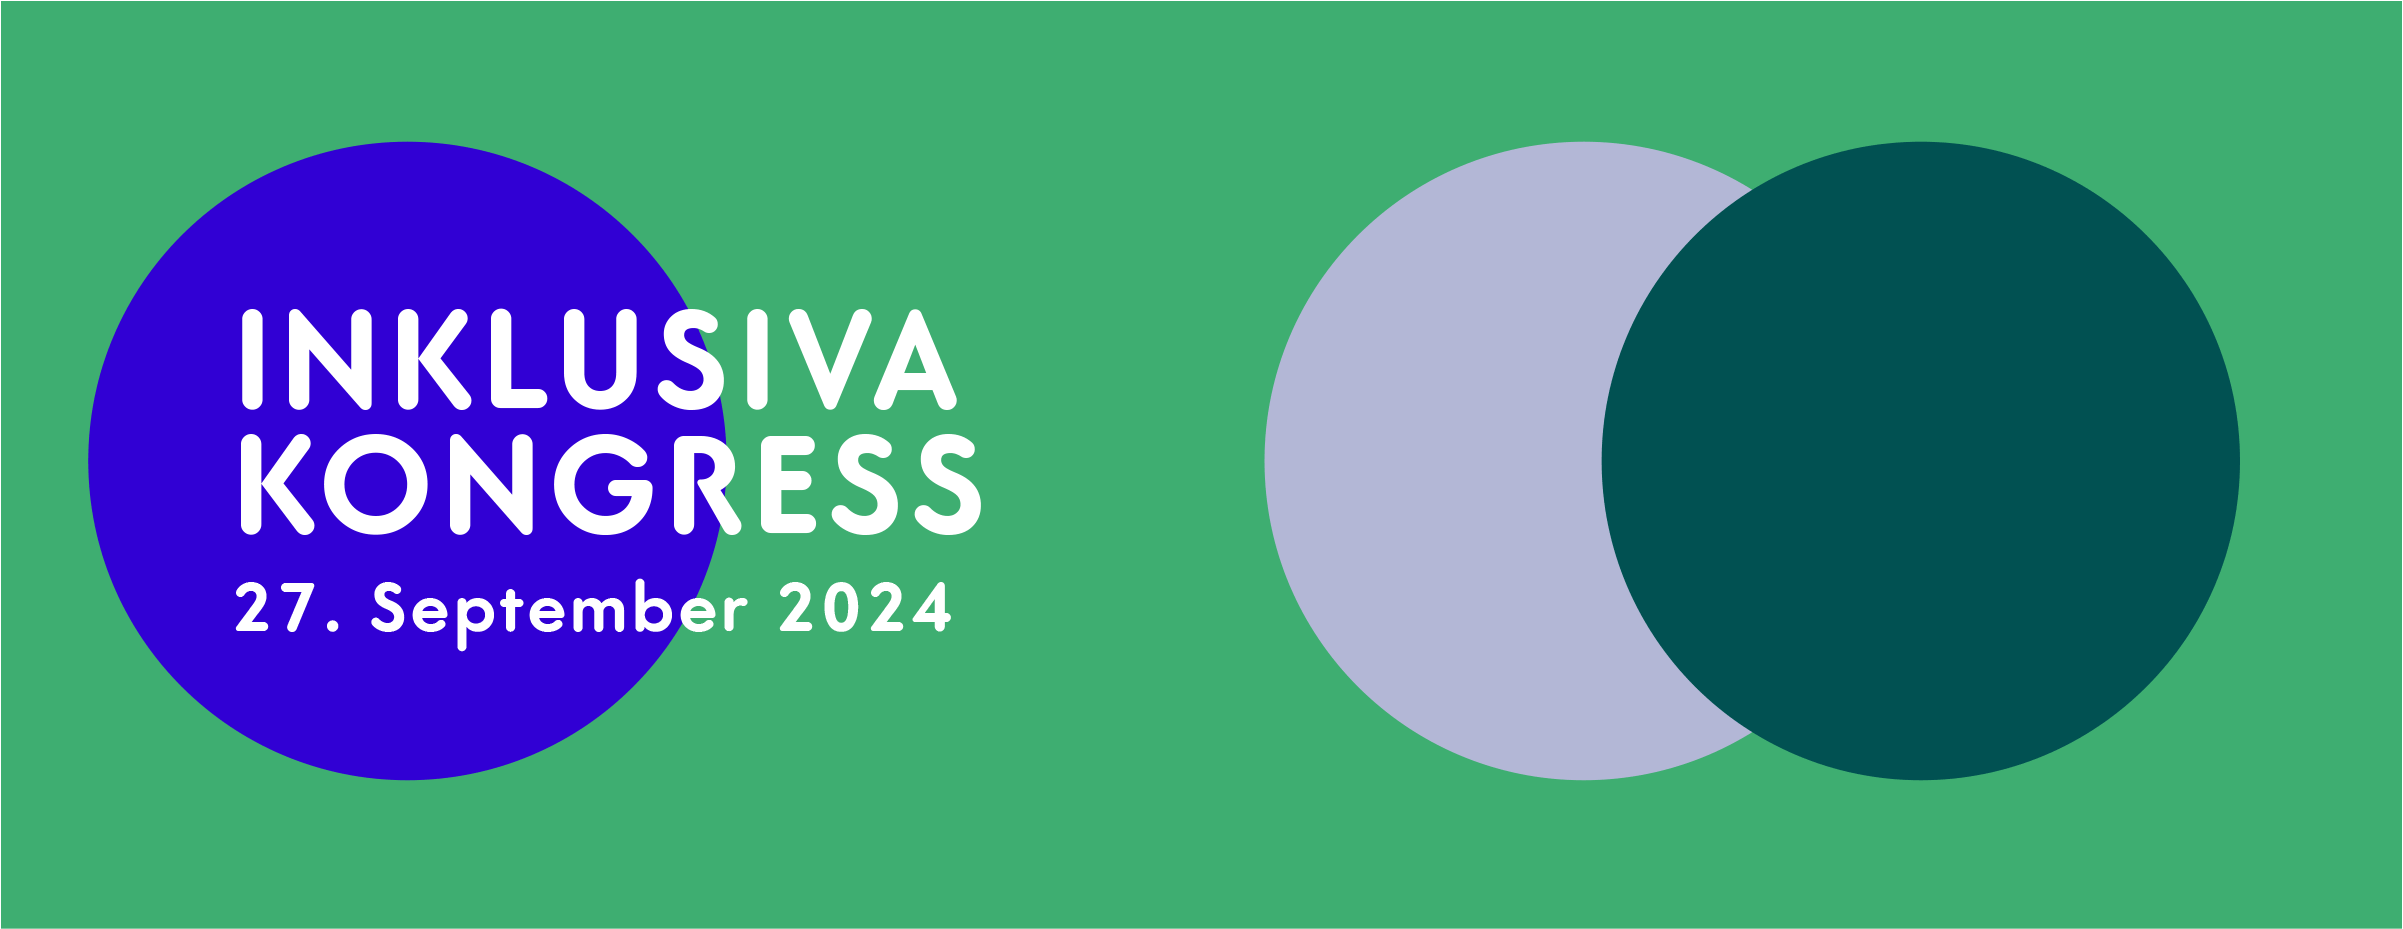 auf grünem Hintergrund sind drei Punkte in blau, grau und dunkelgrün zi sehen. Ein SChriftzug weisst auf den INKLUSIVA-Kongress hin.